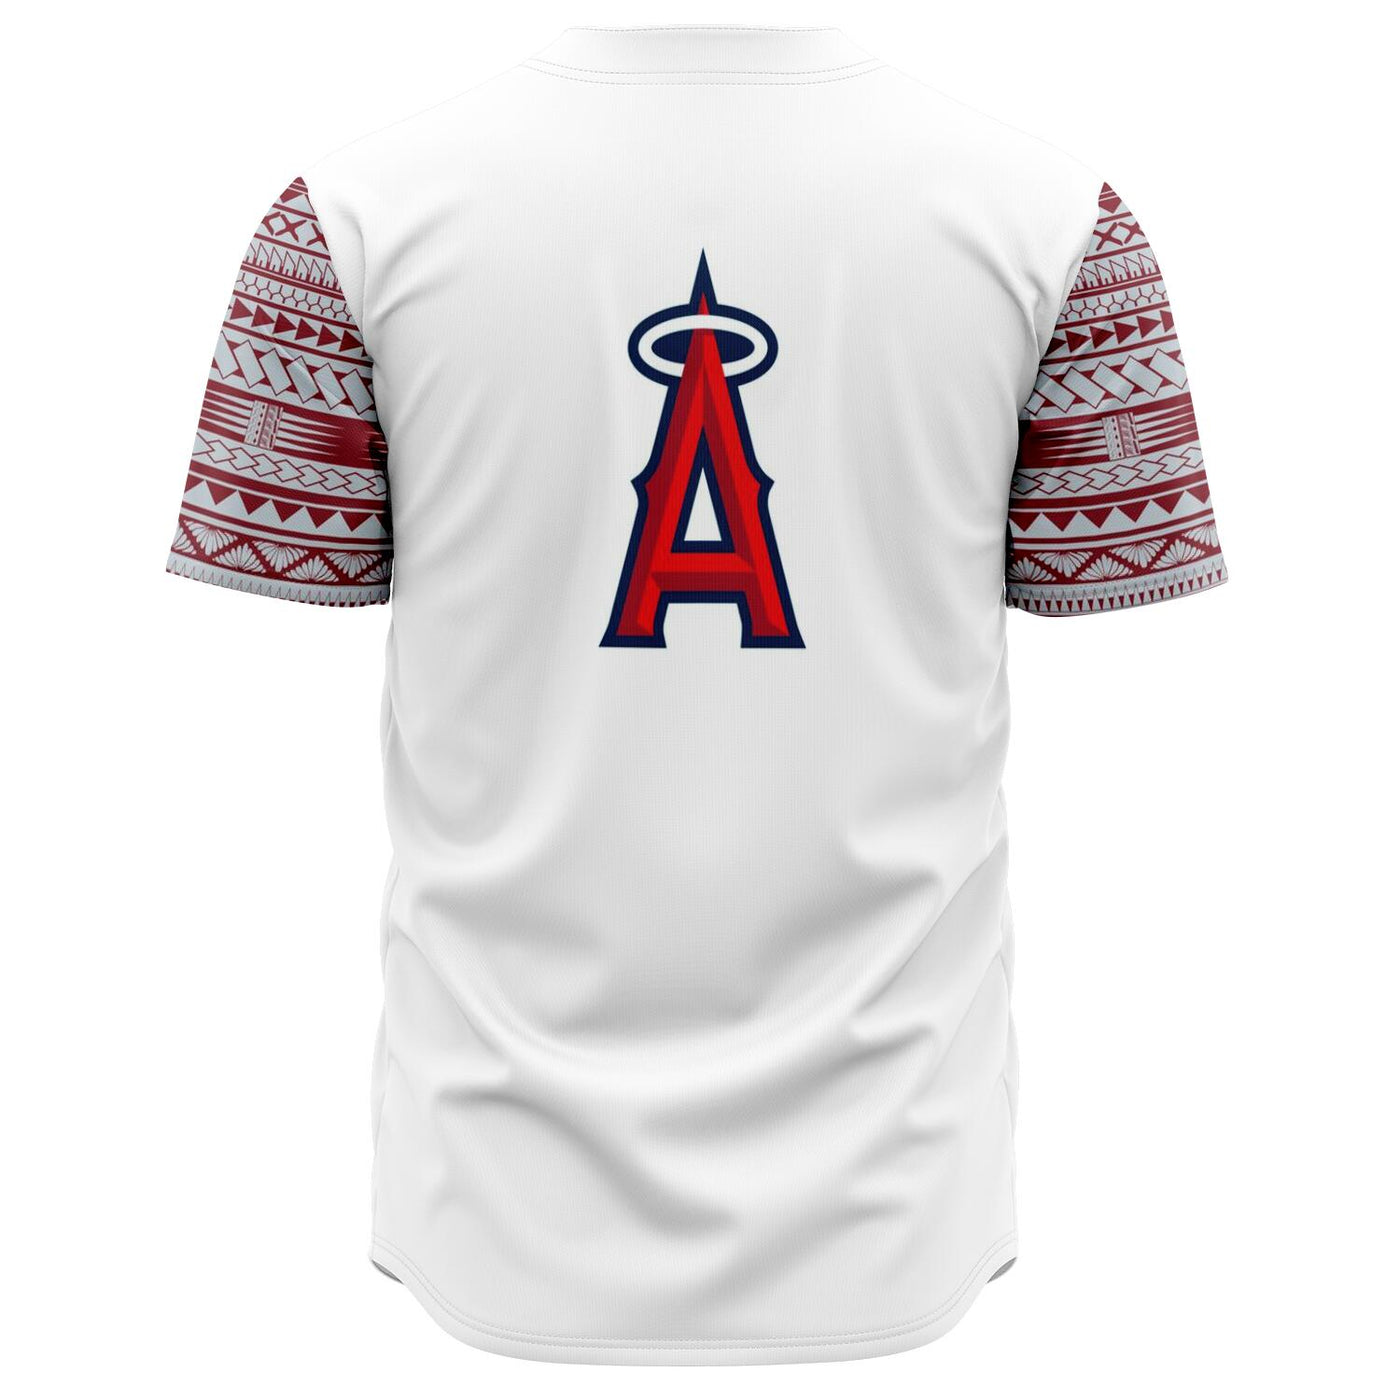 Los Angeles Angels Baseball Shirt - XL Youth